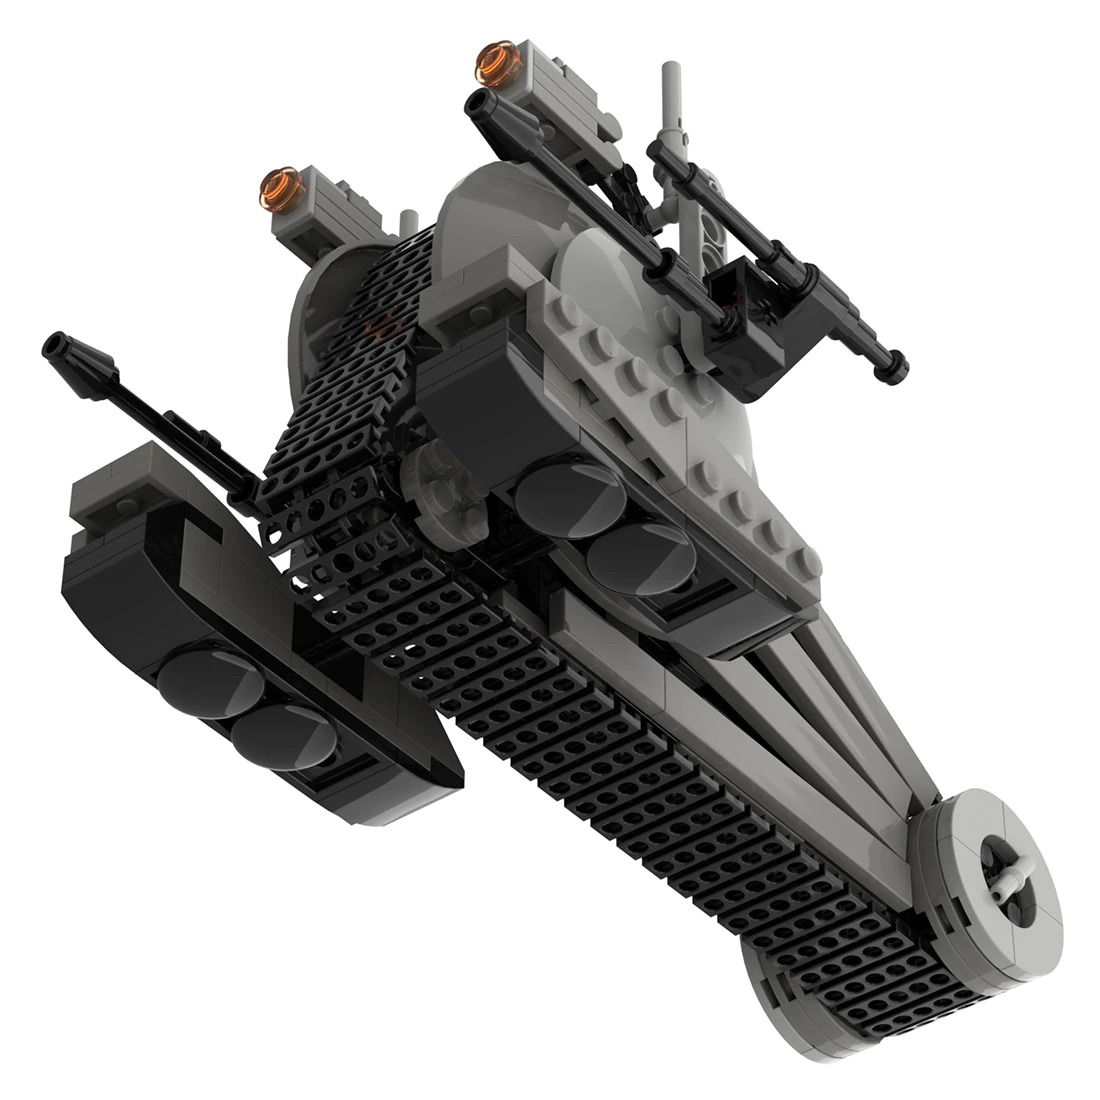 Separatist NR N99 Droid Tank MOC 102664 2